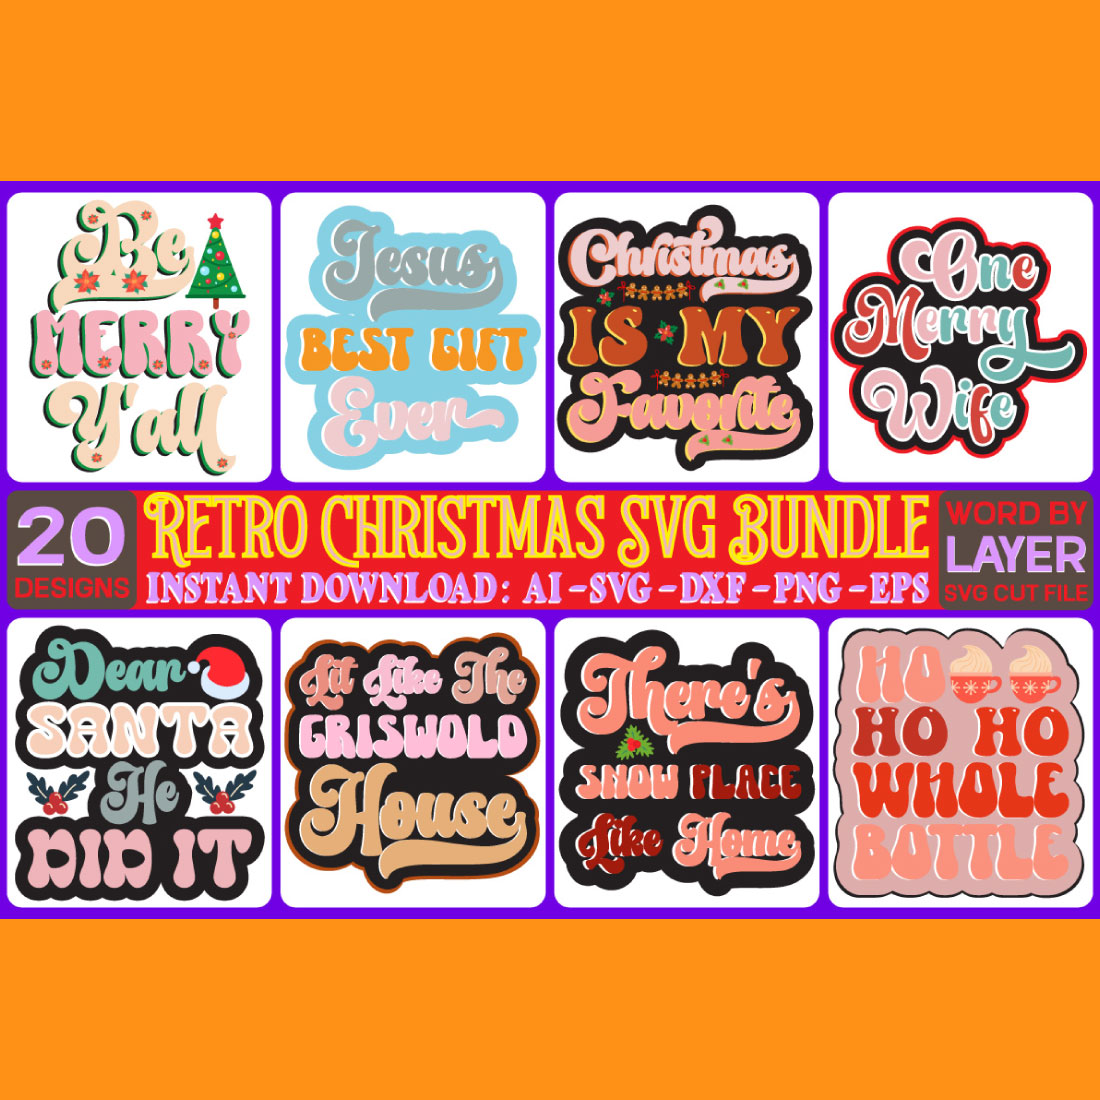 Christmas SVG Retro Design Bundle cover image.